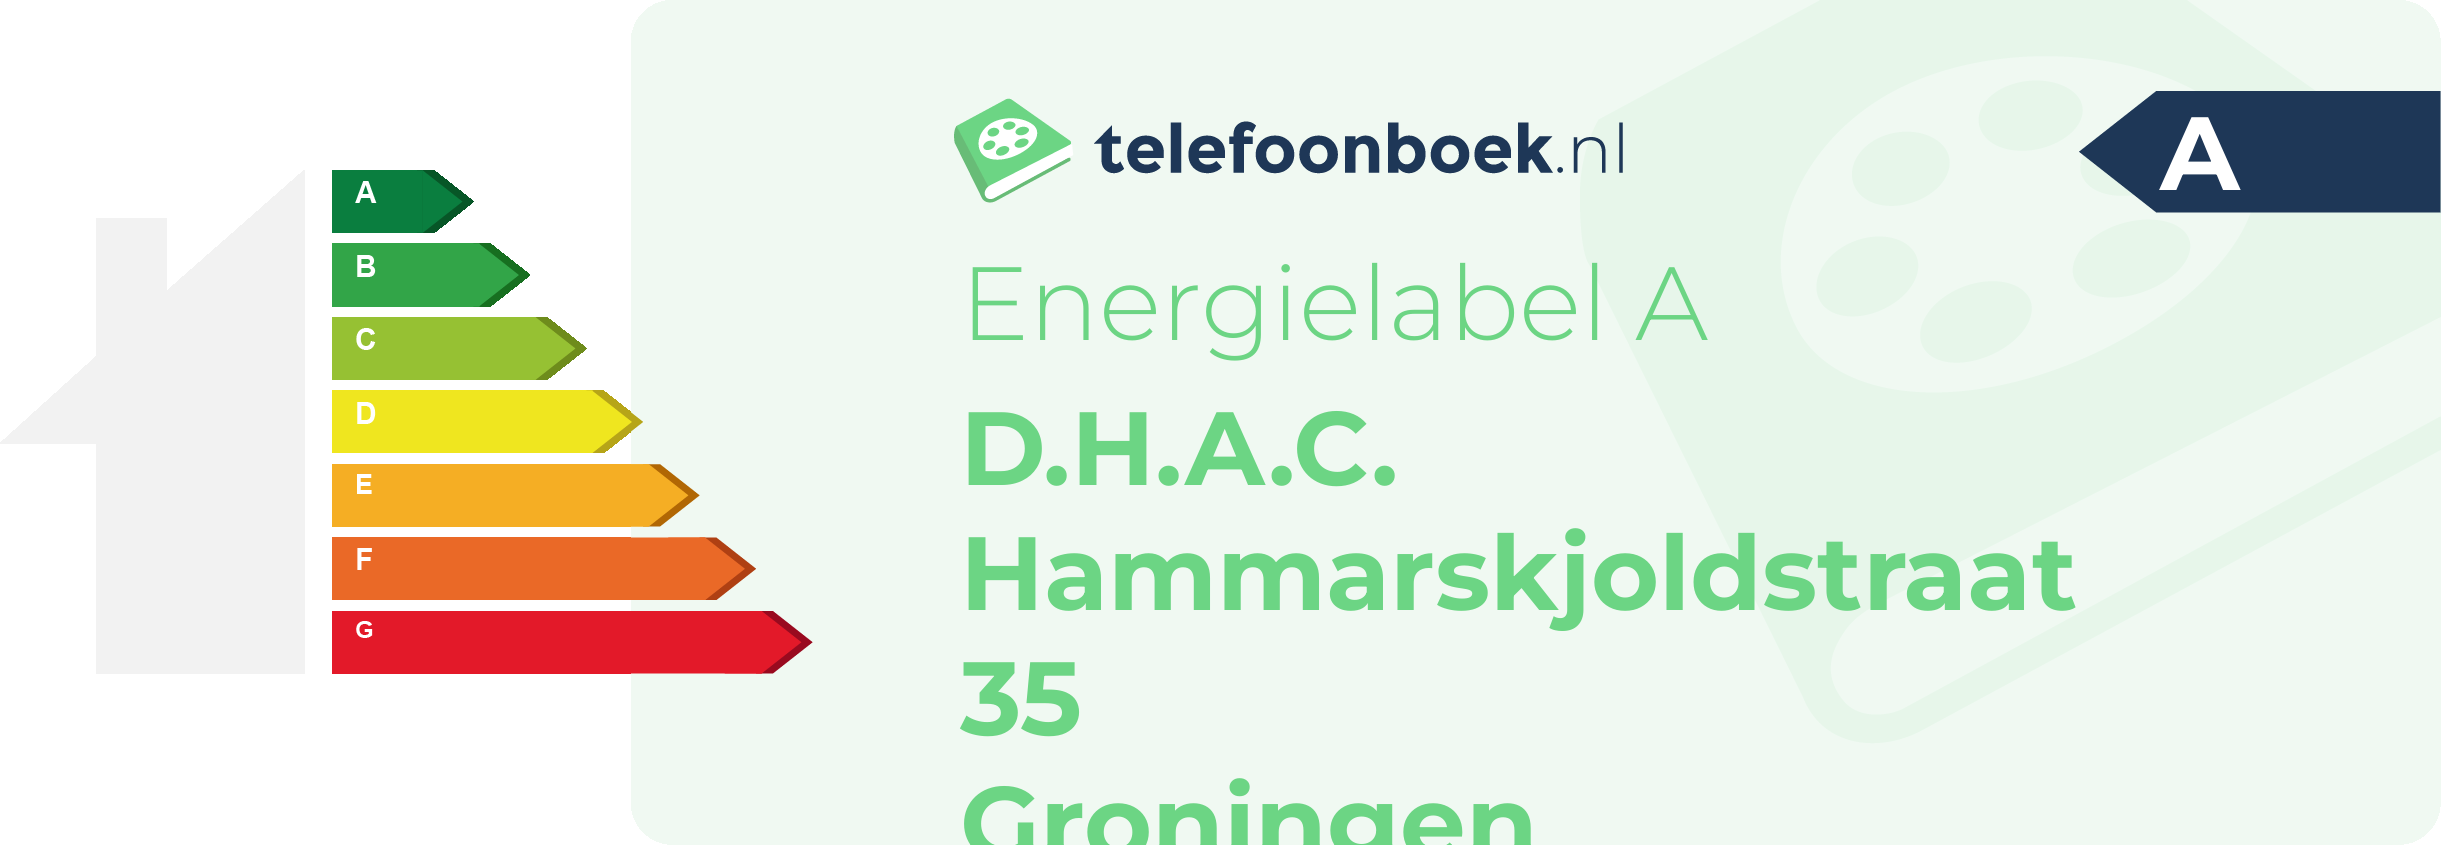 Energielabel D.H.A.C. Hammarskjoldstraat 35 Groningen